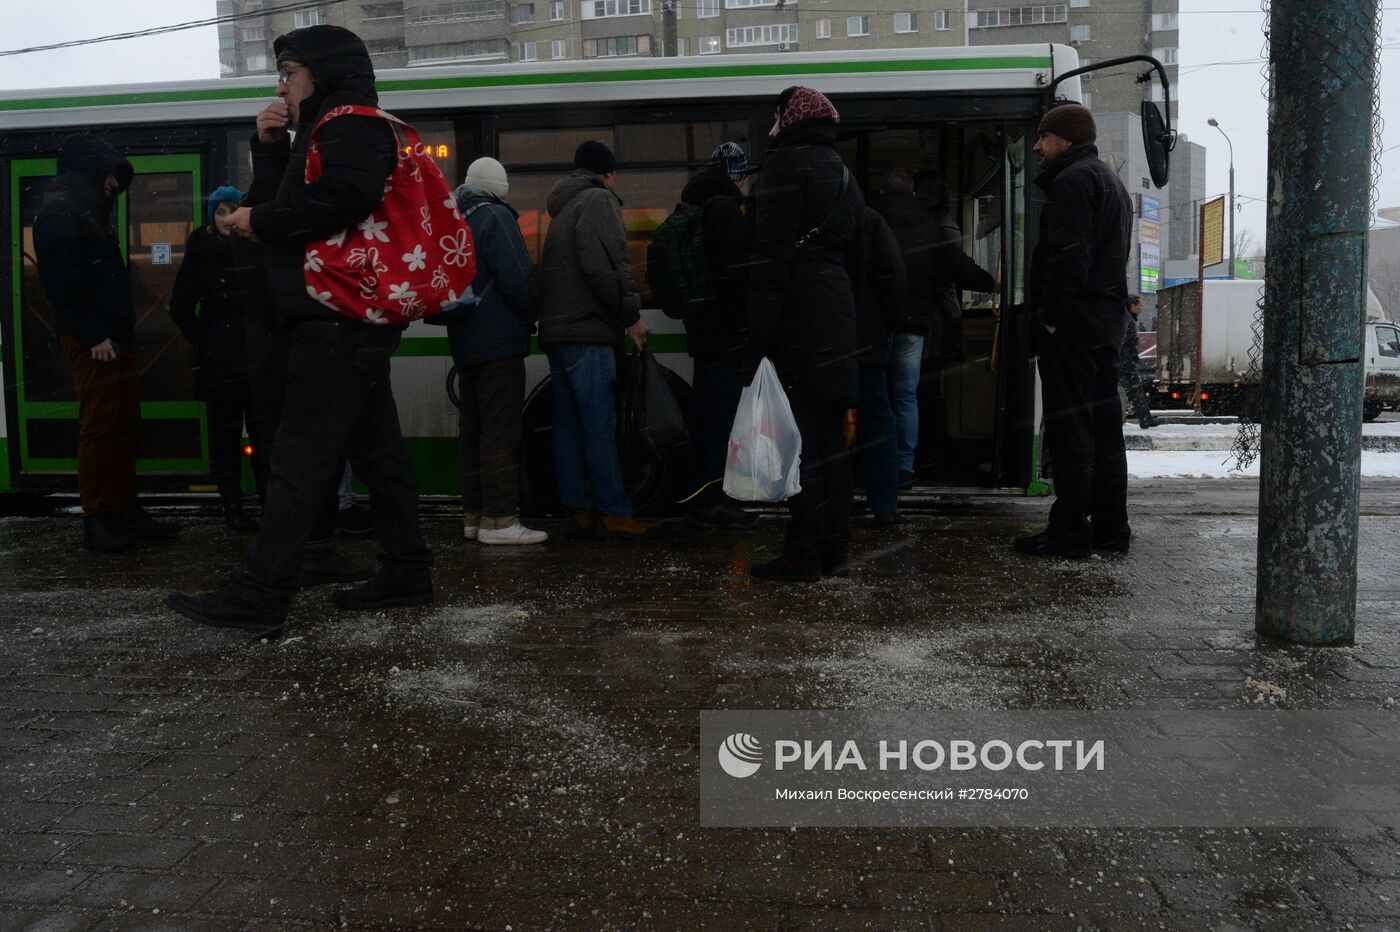 Обработка дорог противогололедными реагентами в Москве